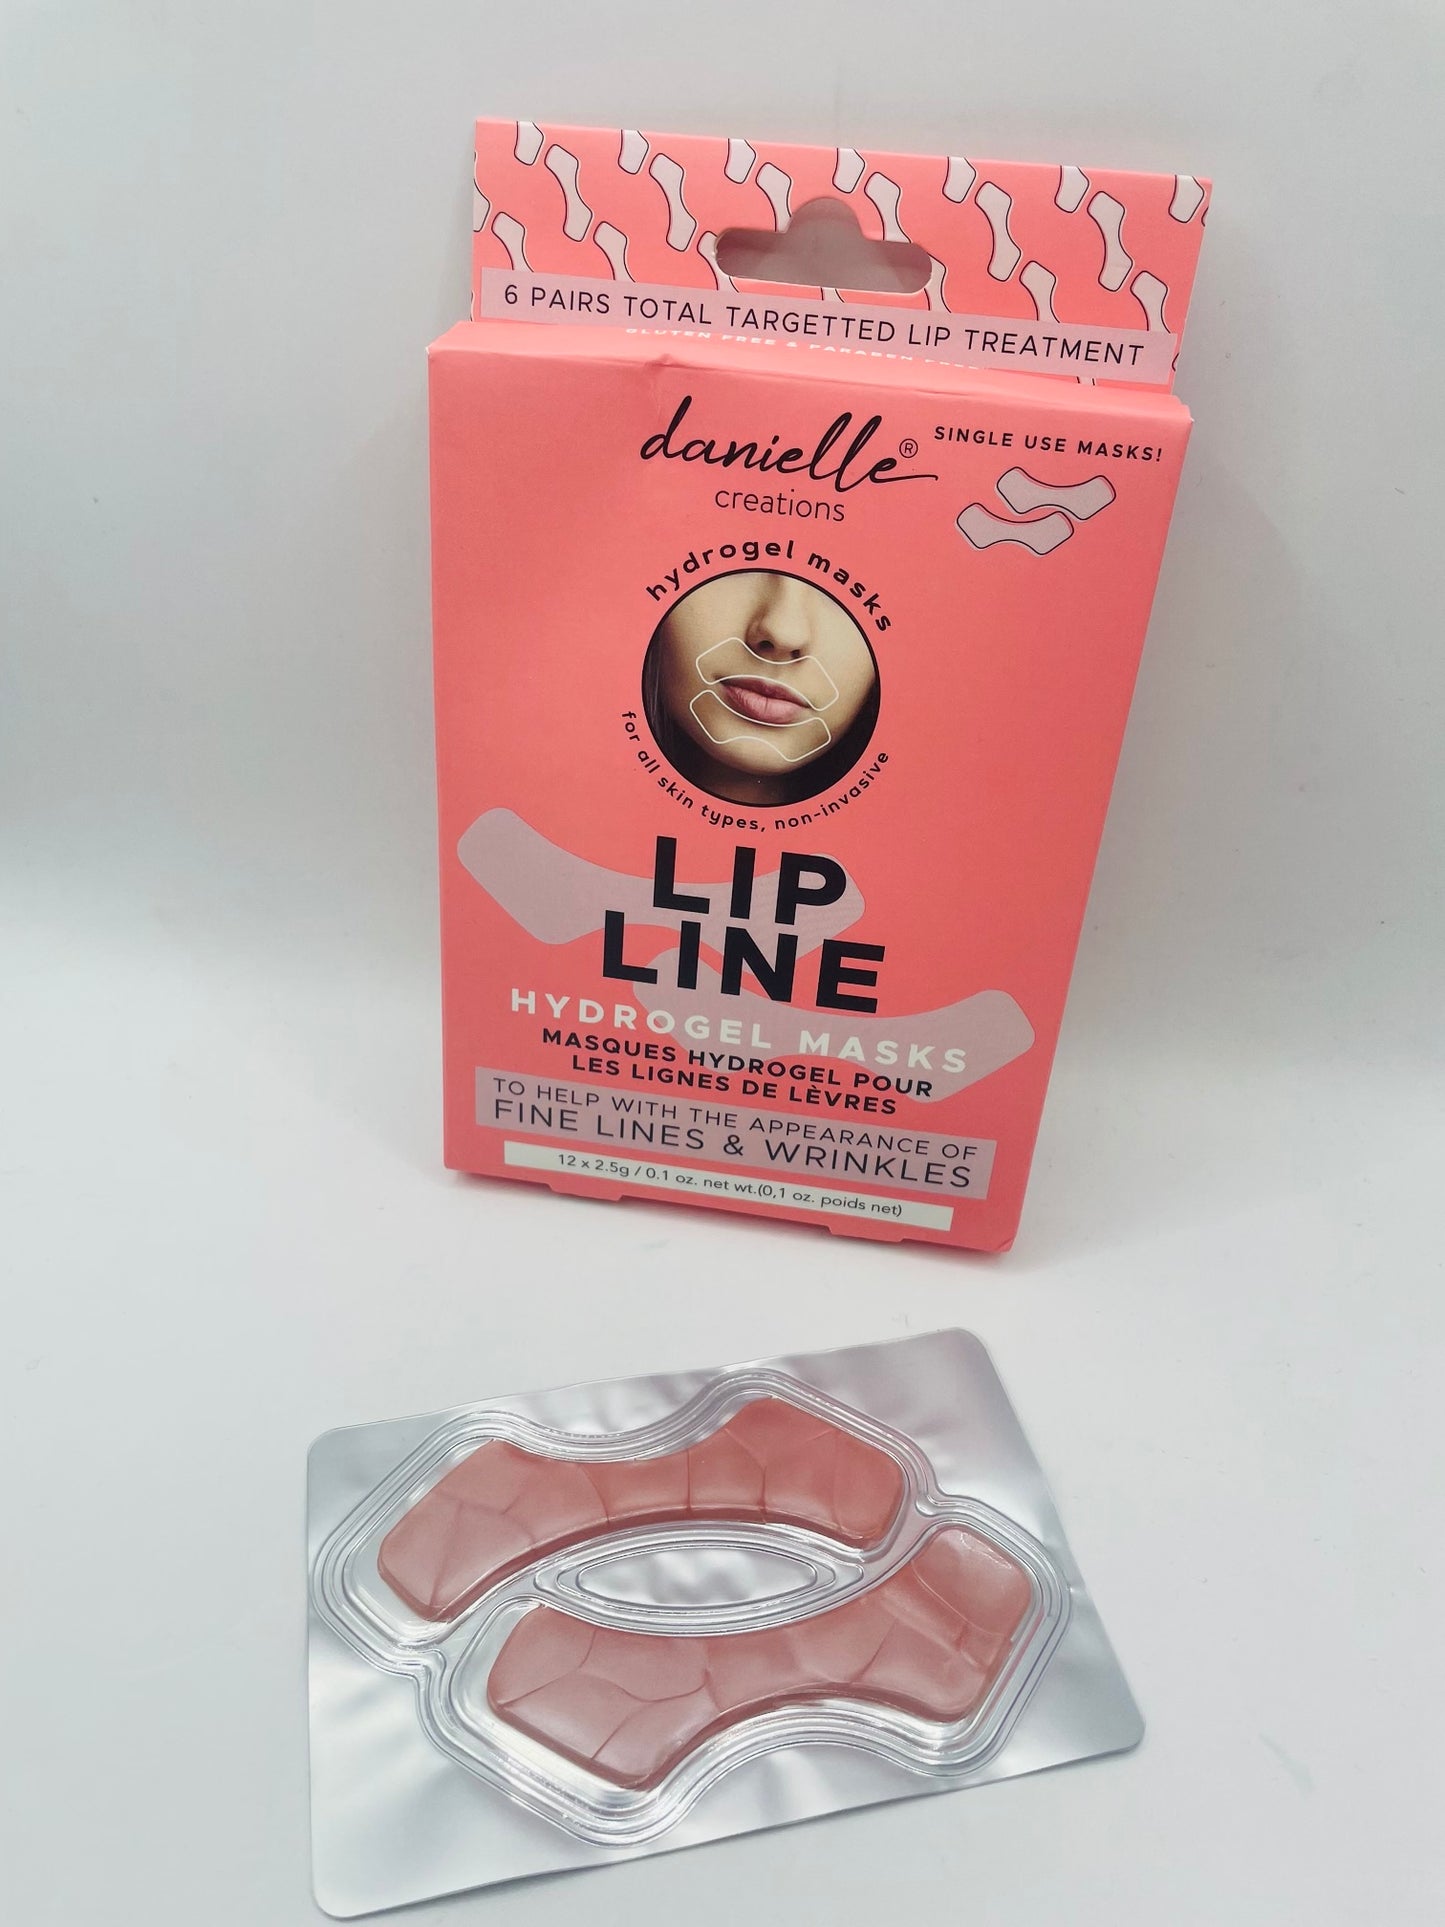 Lip line hydrogel masks